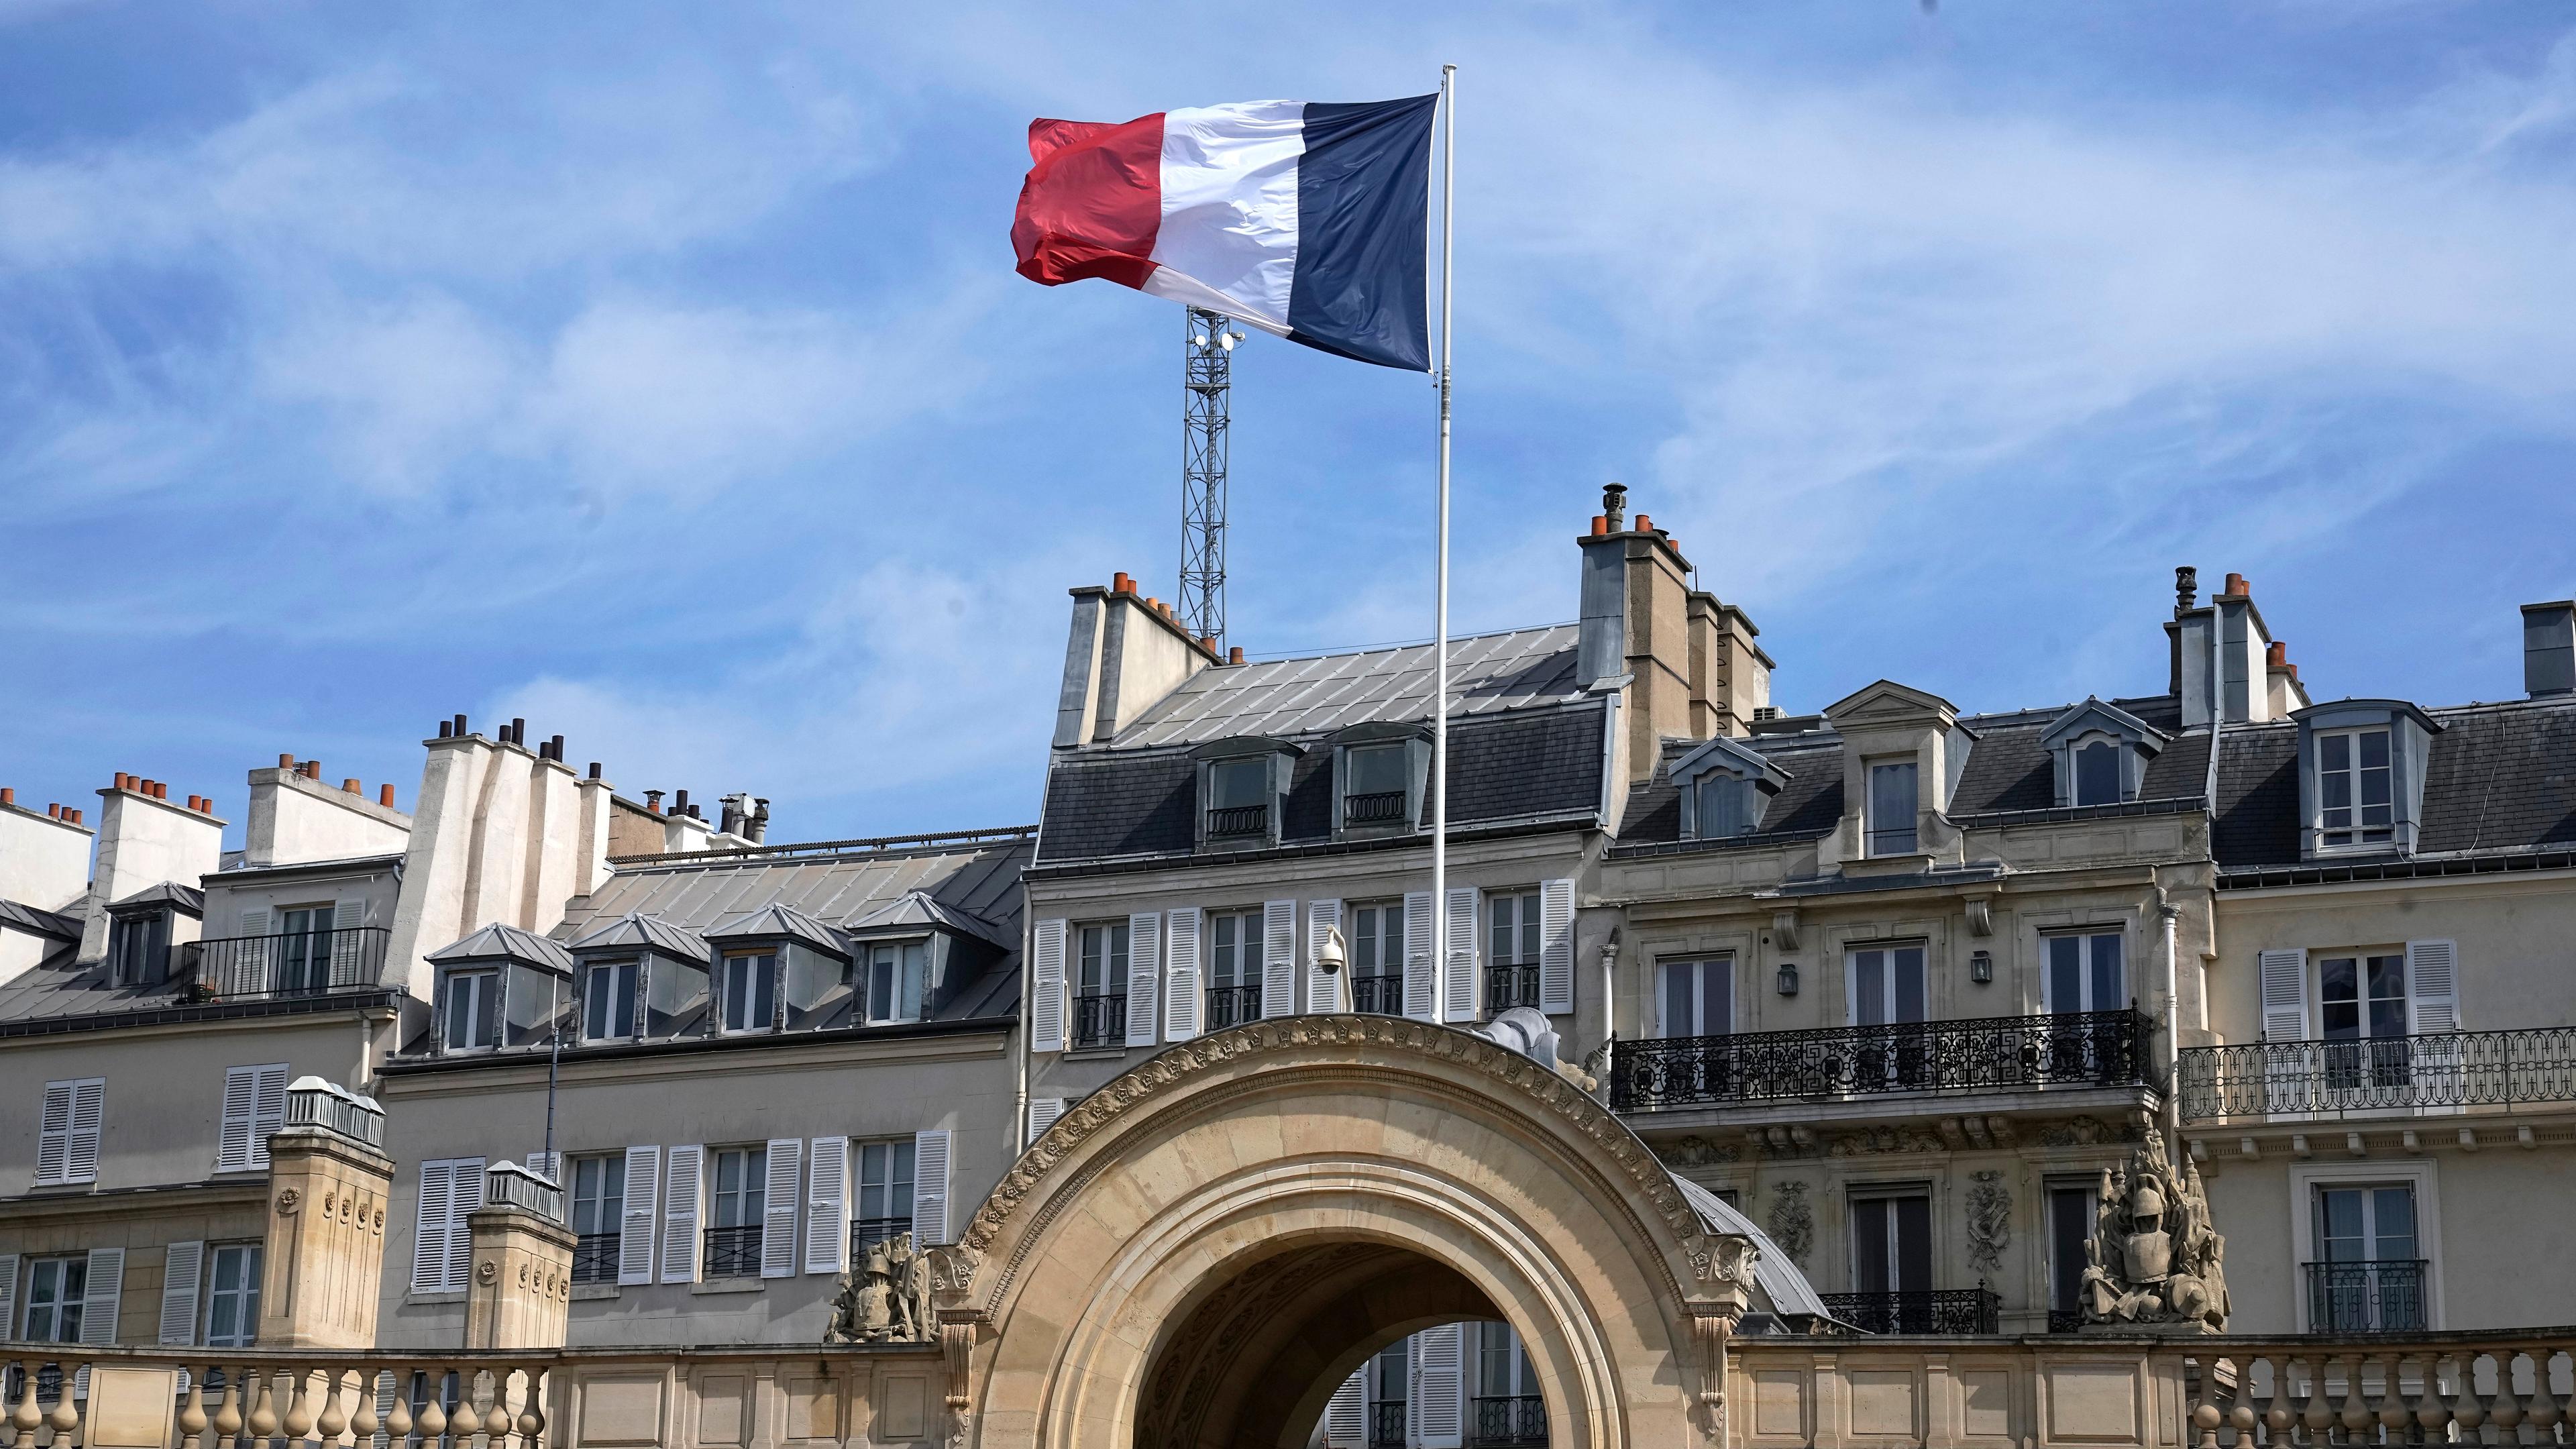 Frankreich, Paris: Die französische Flagge weht vor dem Elysee-Palast.